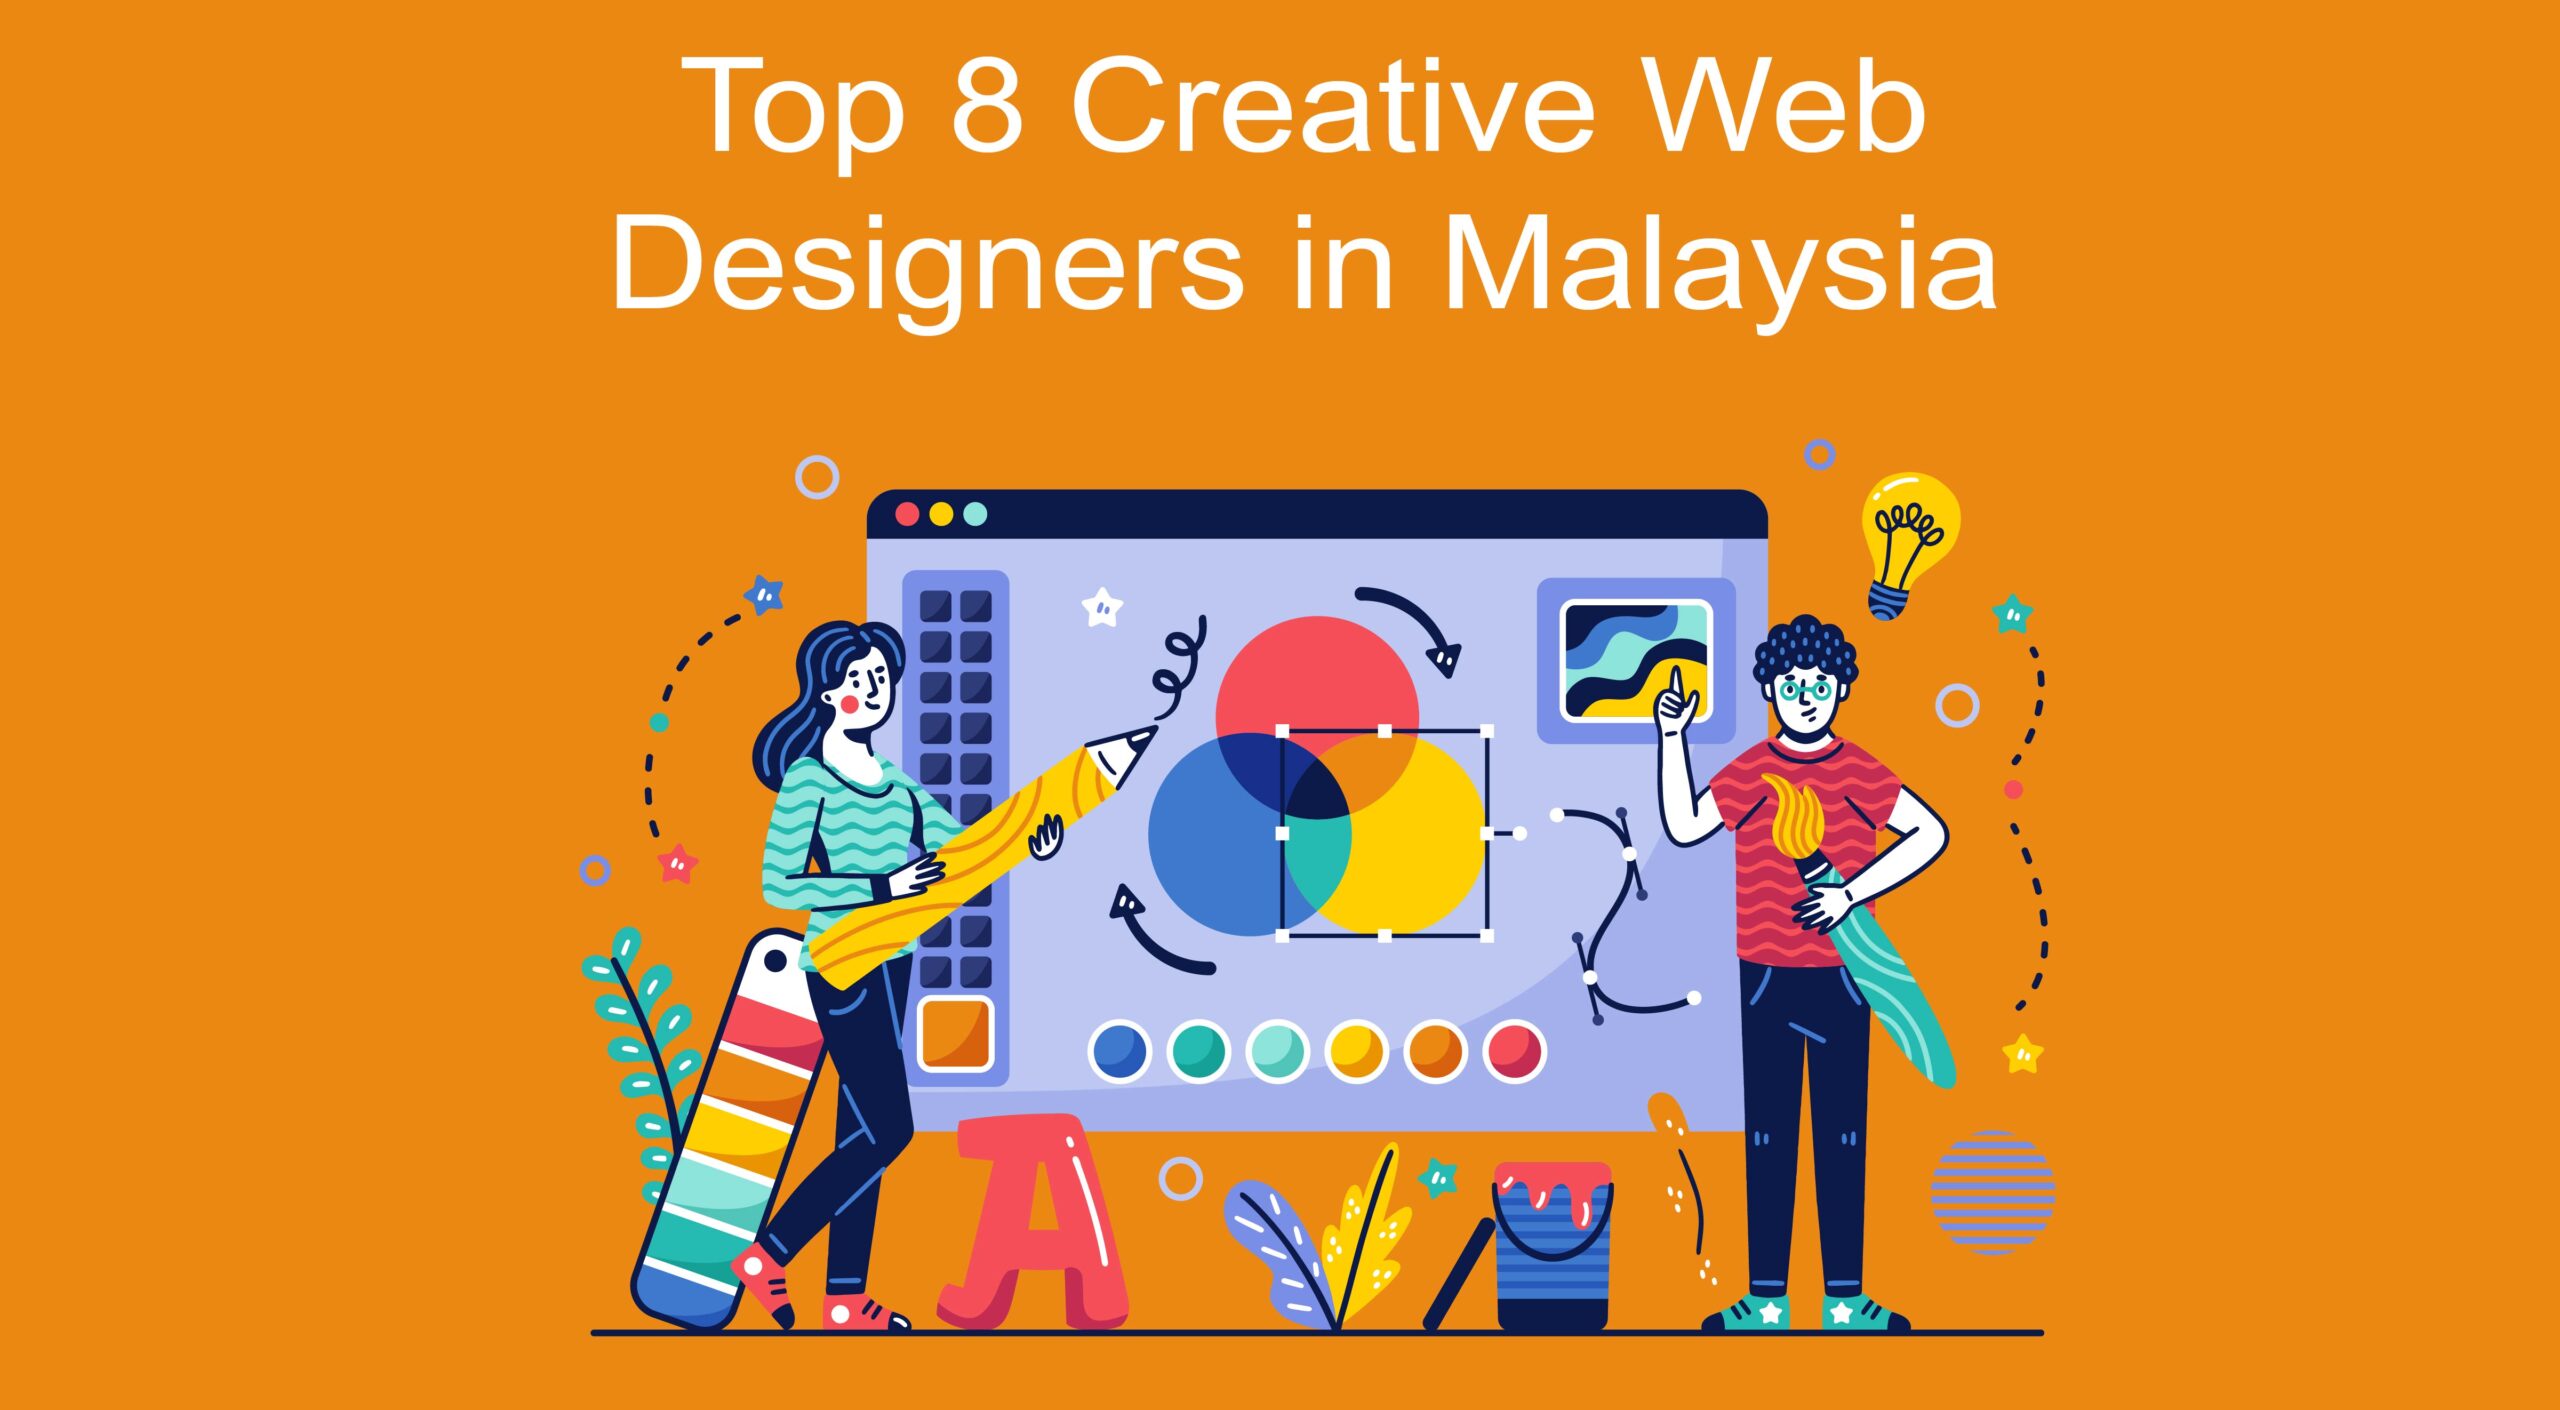 Top 8 Creative Web Designers in Malaysia